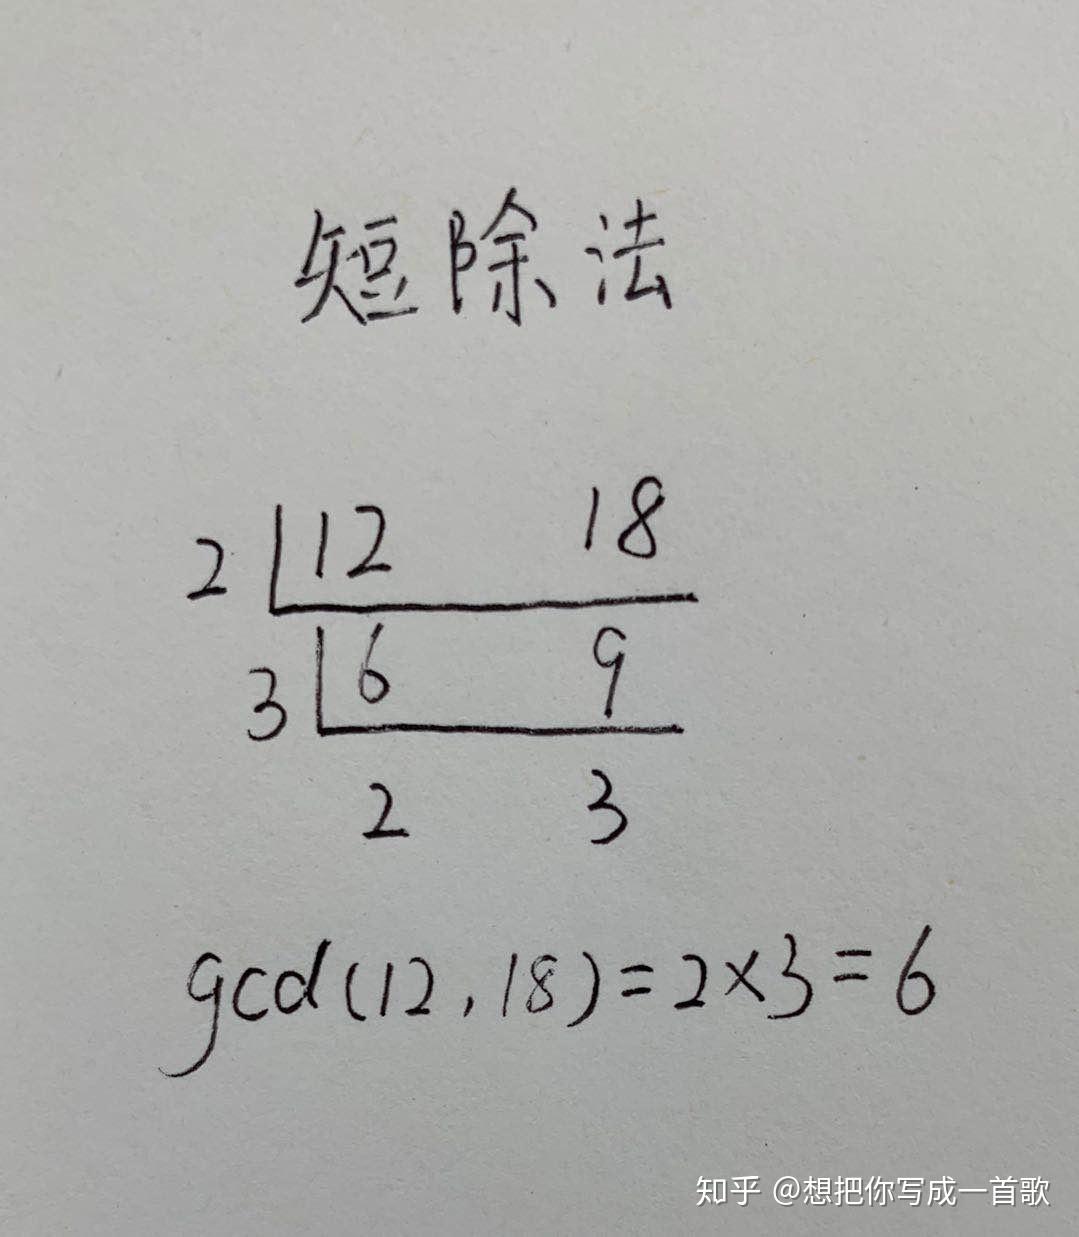 欧几里得算法:计算两个正整数的最大公约数